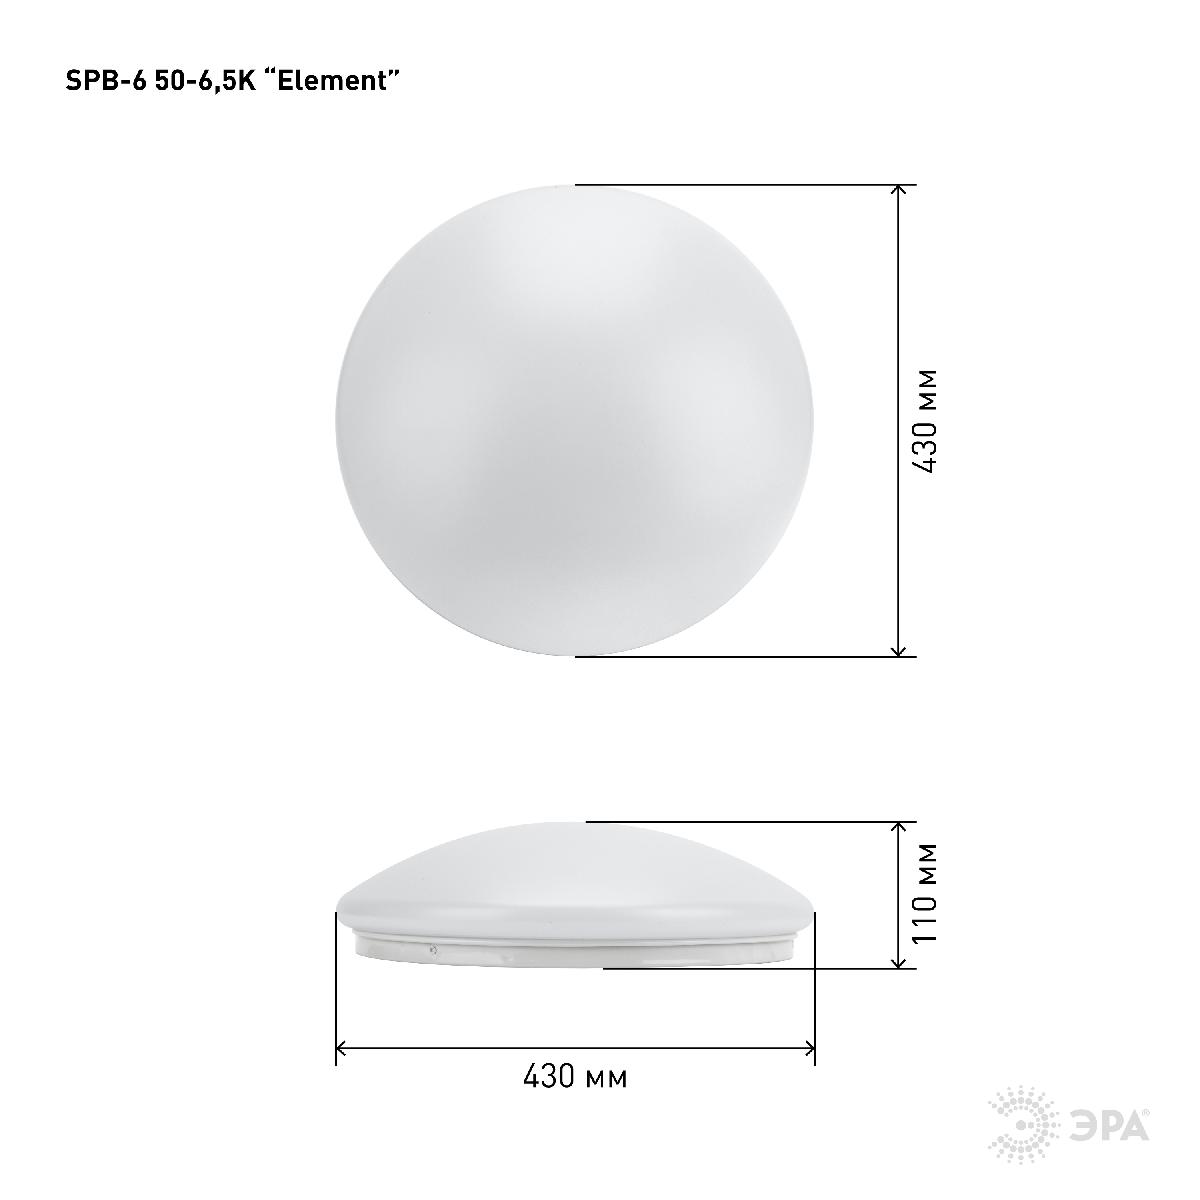 Потолочный светильник Эра SPB-6-50-6,5K Element Б0054486